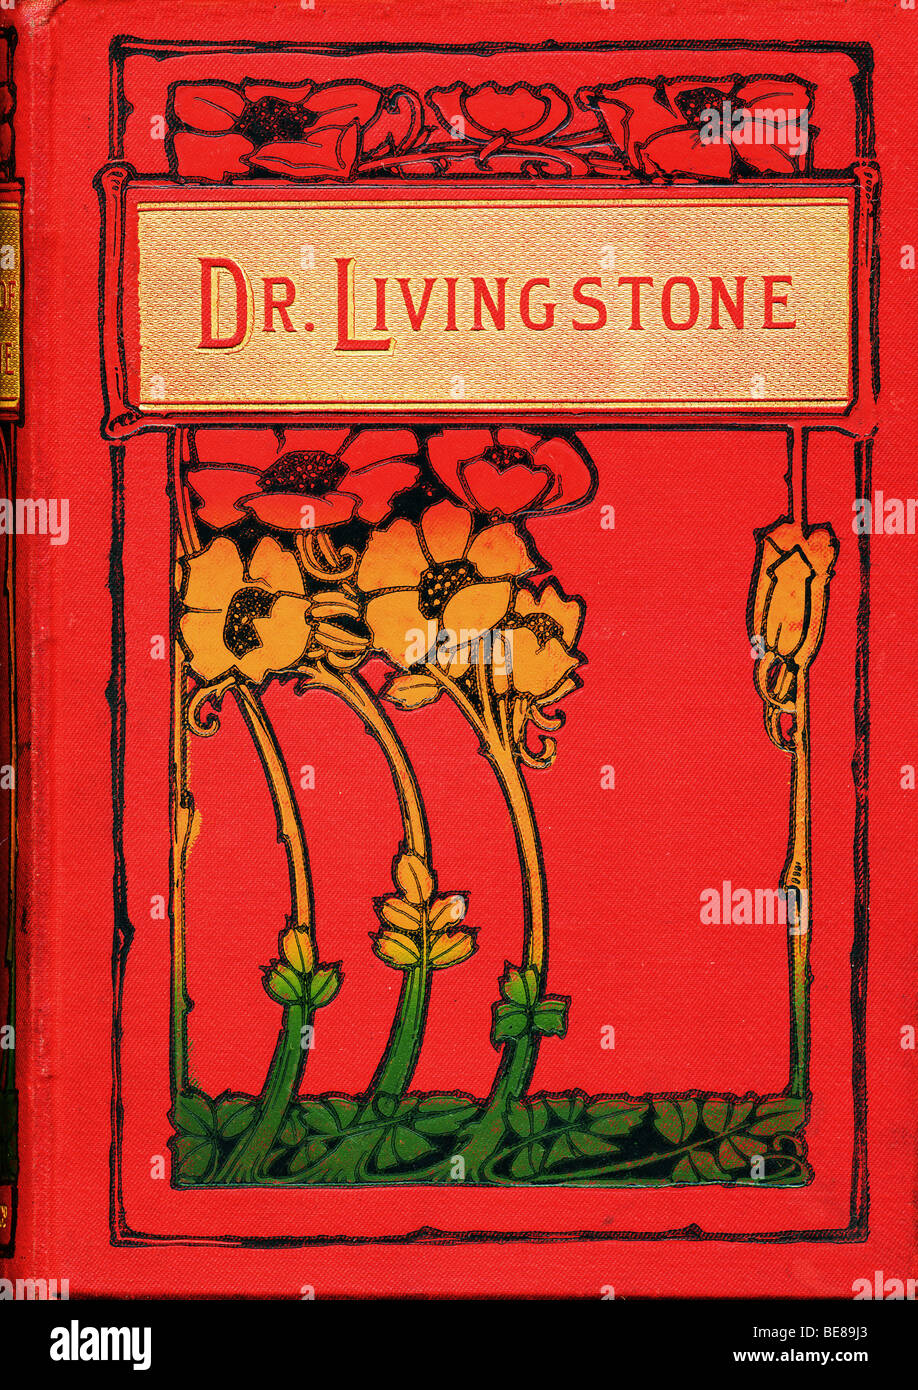 Art Nouveau cubierta de tapa dura del libro La vida y exploraciones del Dr. Livingstone 1884 SÓLO PARA USO EDITORIAL Foto de stock